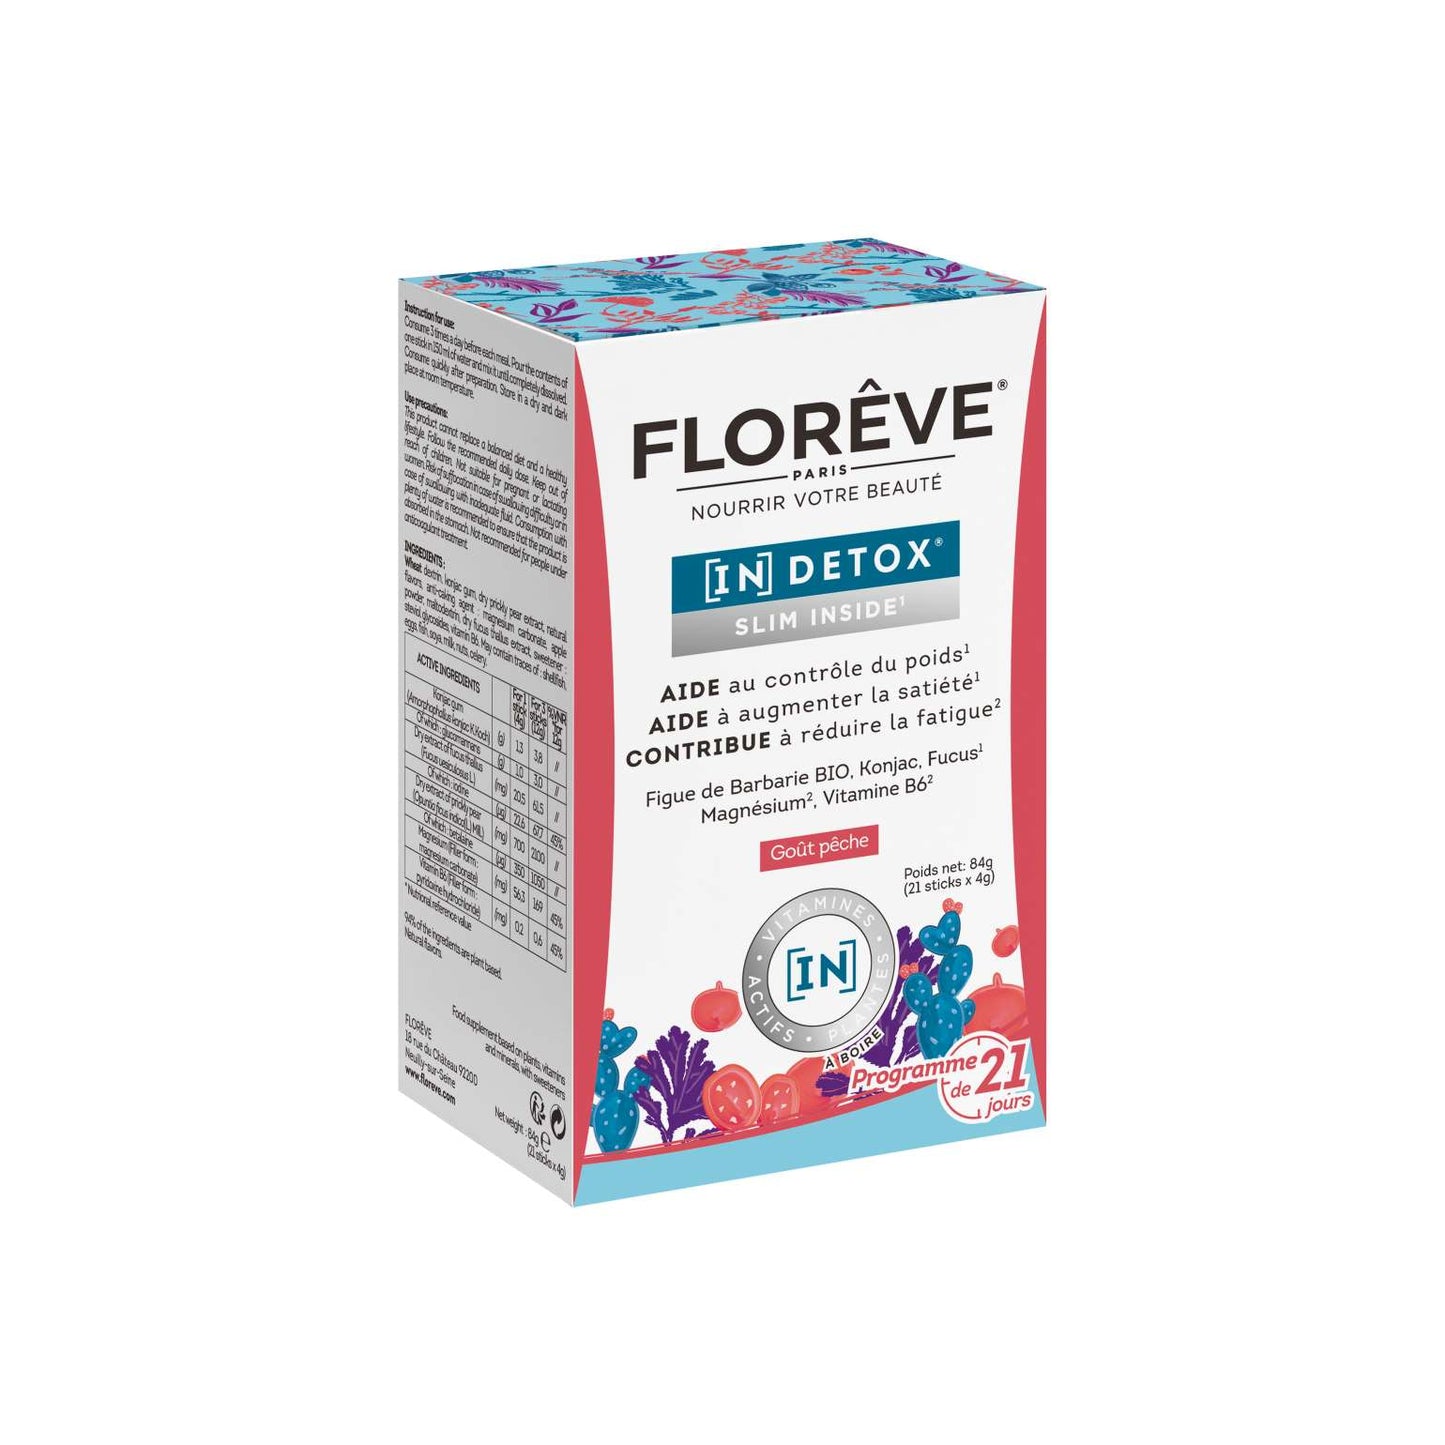 Florêve [IN] Detox Slim Inside